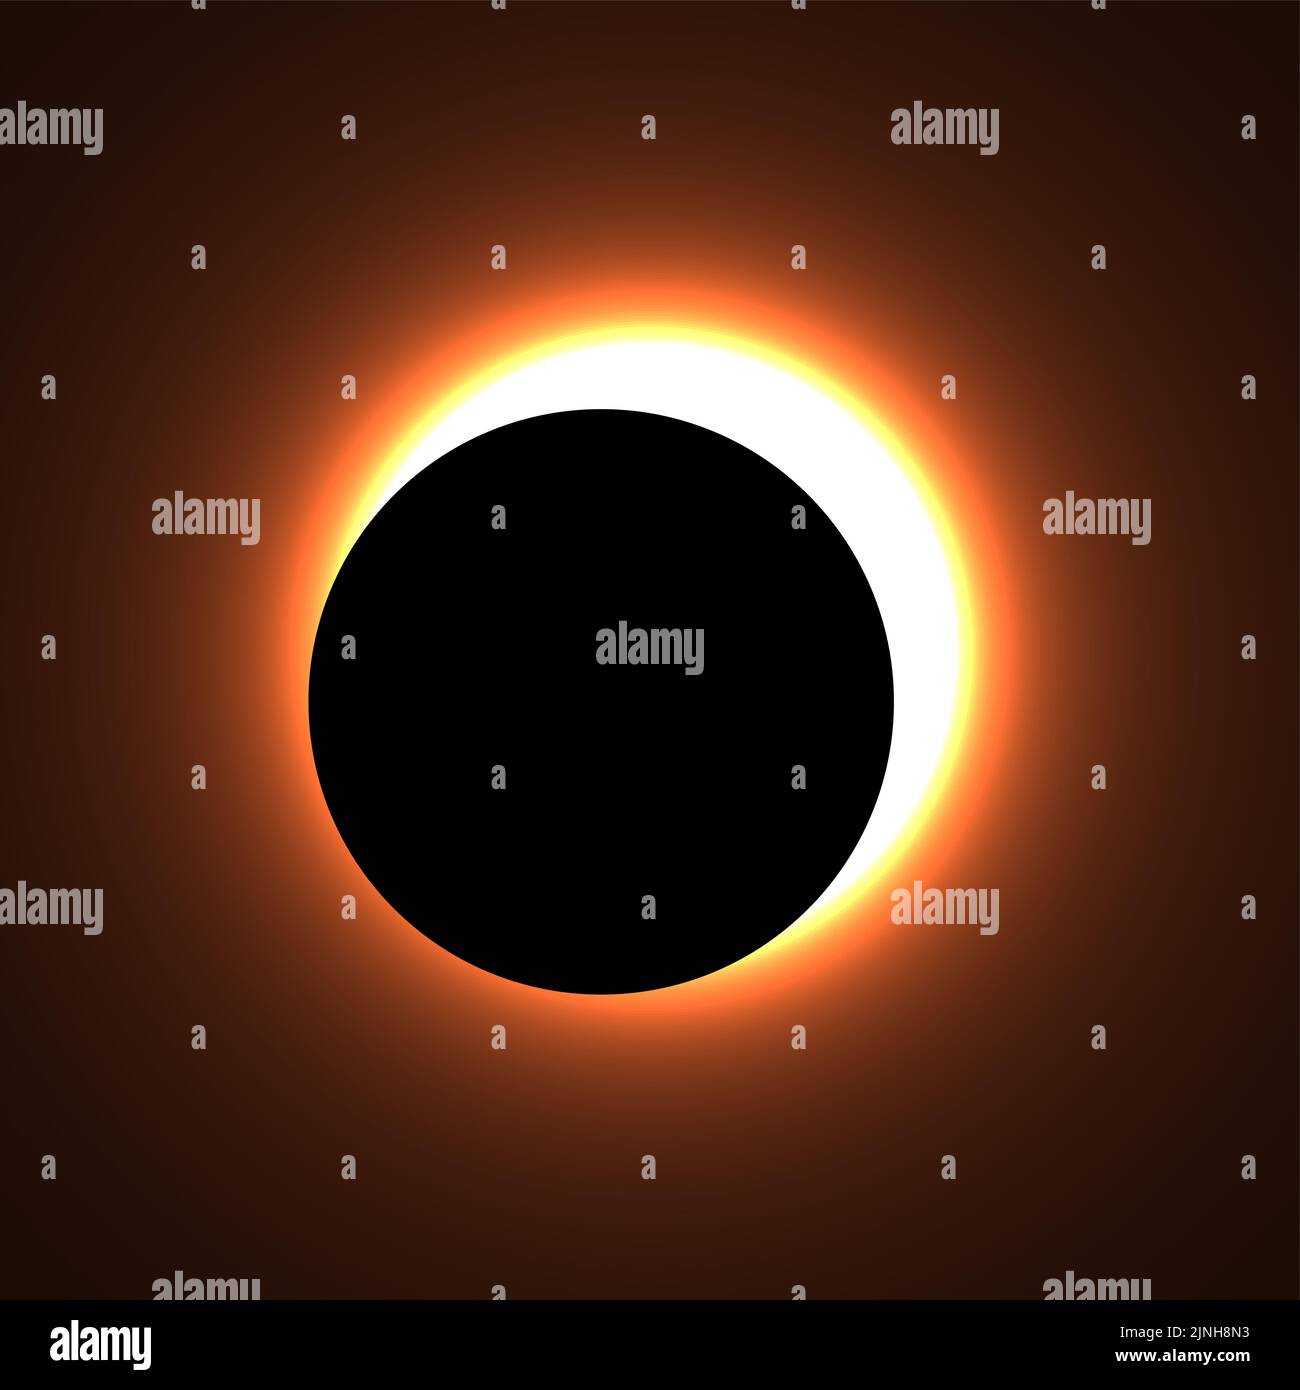 Eclipse solar parcial. Ilustración de la Luna oscurece parcialmente al Sol. Los eclipses han sido interpretados como presagios o portentos. Foto de stock